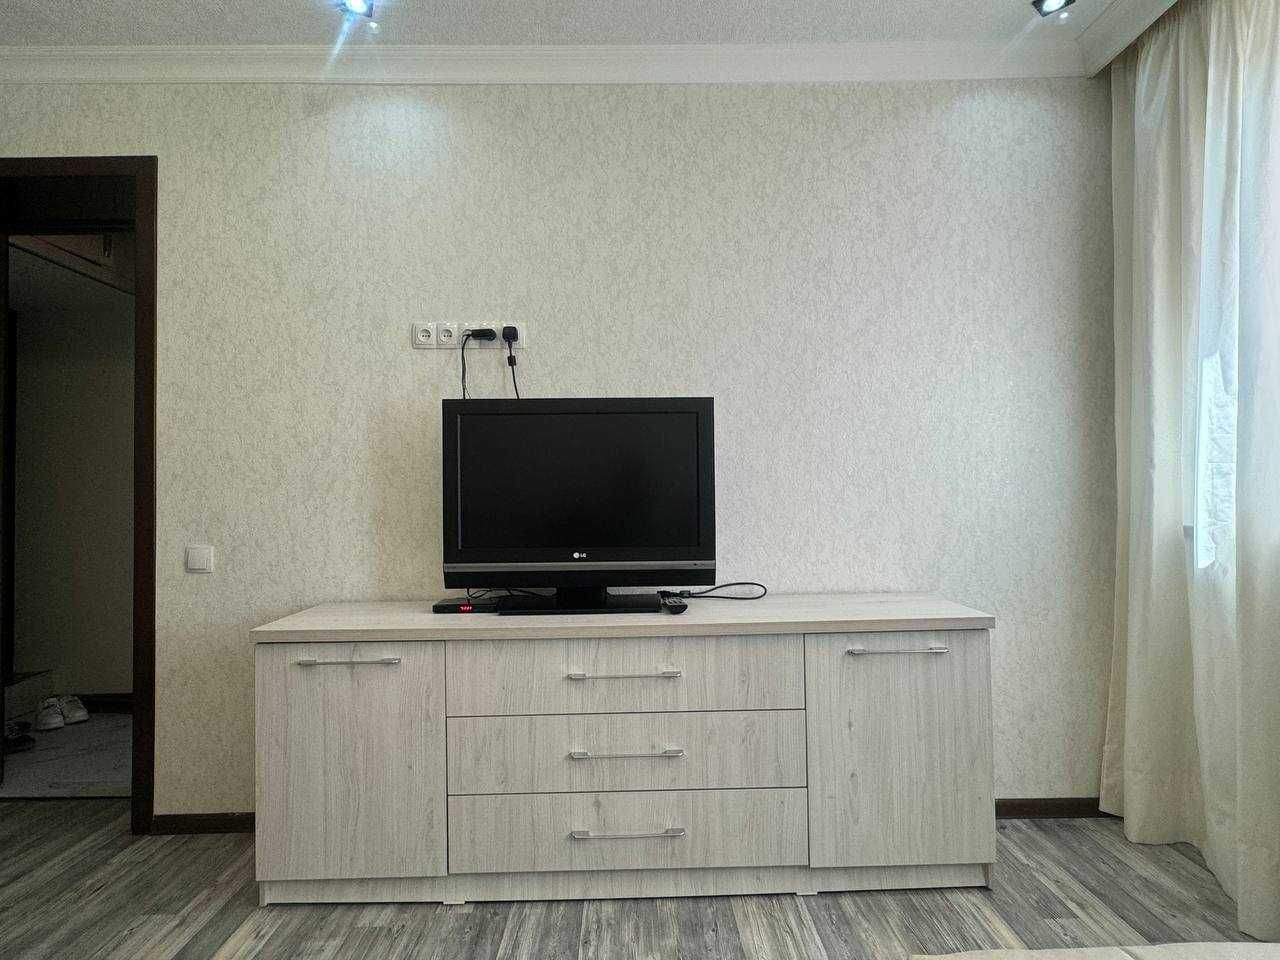 Продам 2х комнатную квартиру на Новомосковском